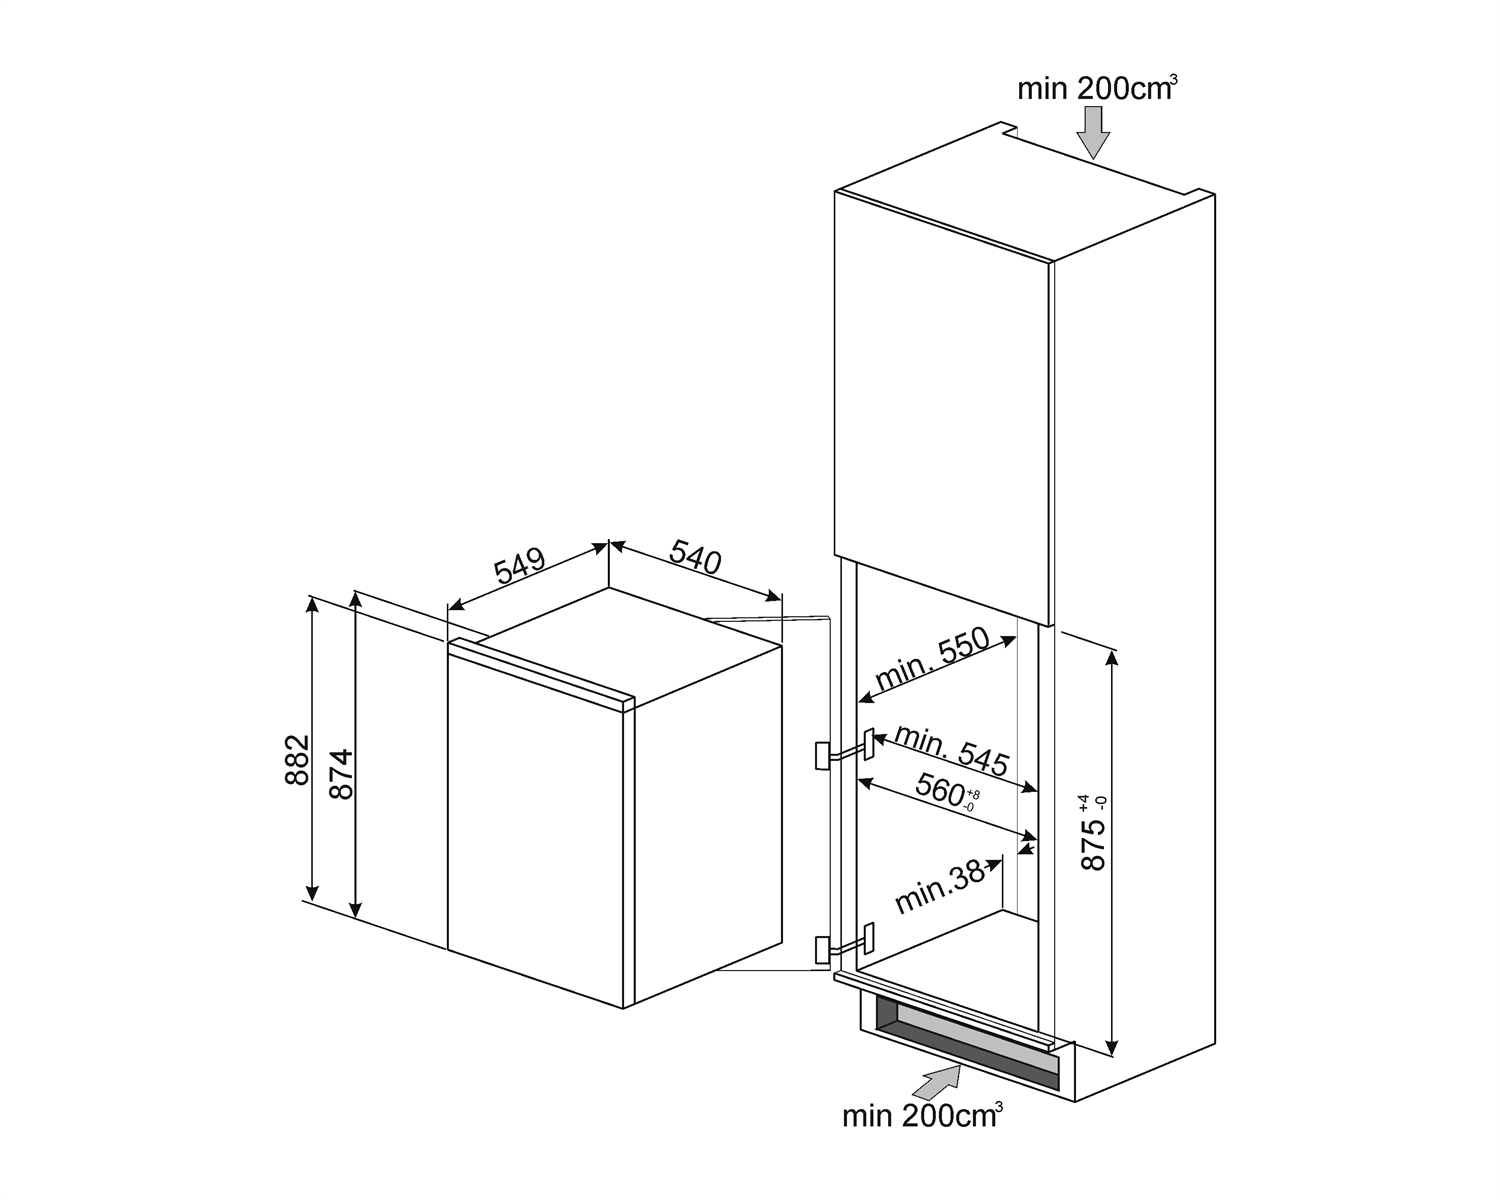 Maattekening SMEG koelkast inbouw S3L090P1